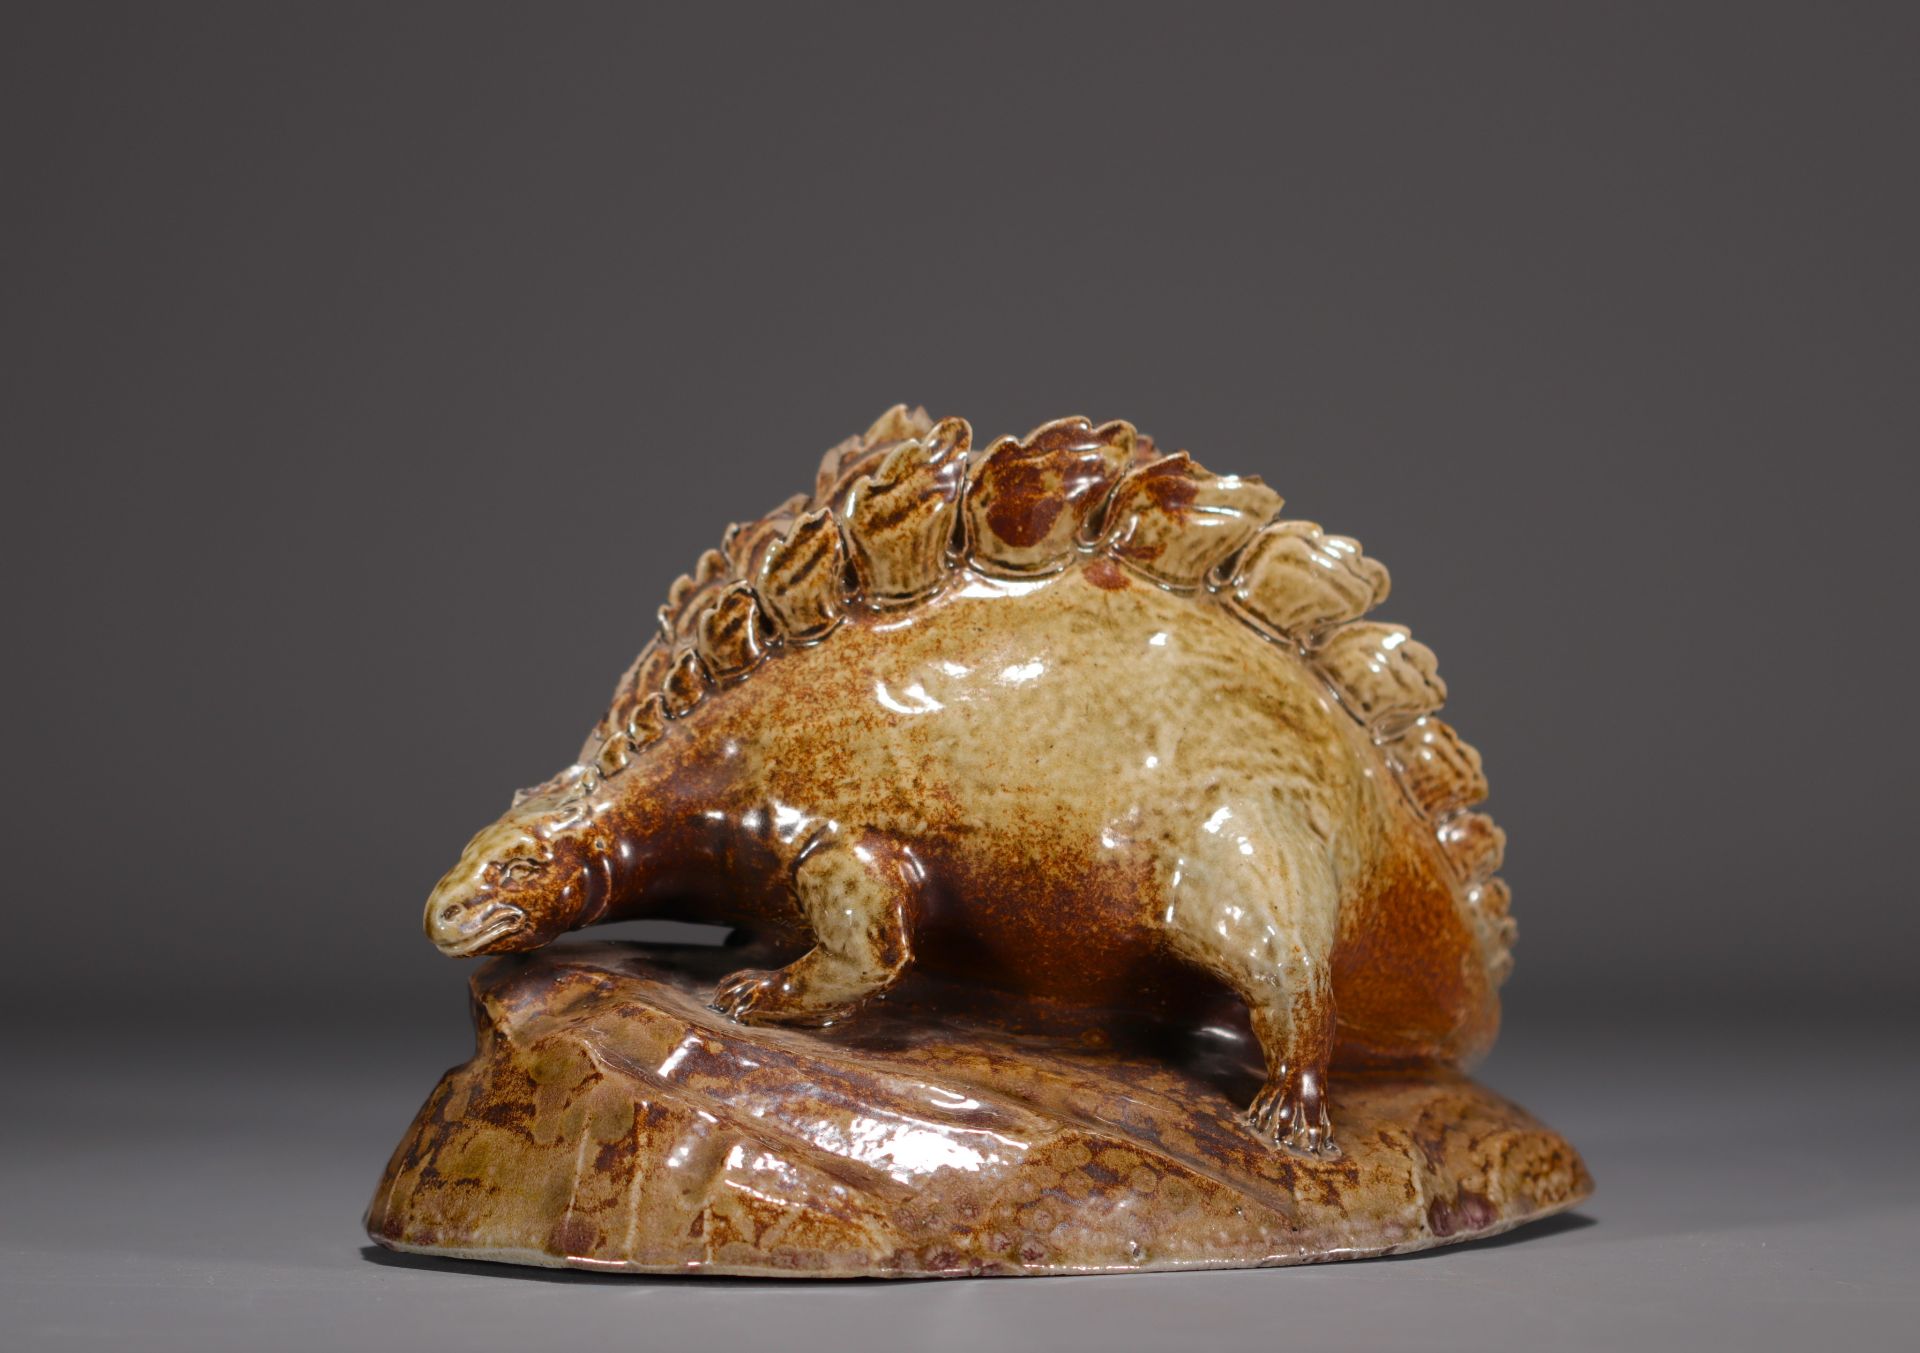 K. FACHSCHULE "Dinosaur" Sculpture in glazed stoneware. - Bild 2 aus 6